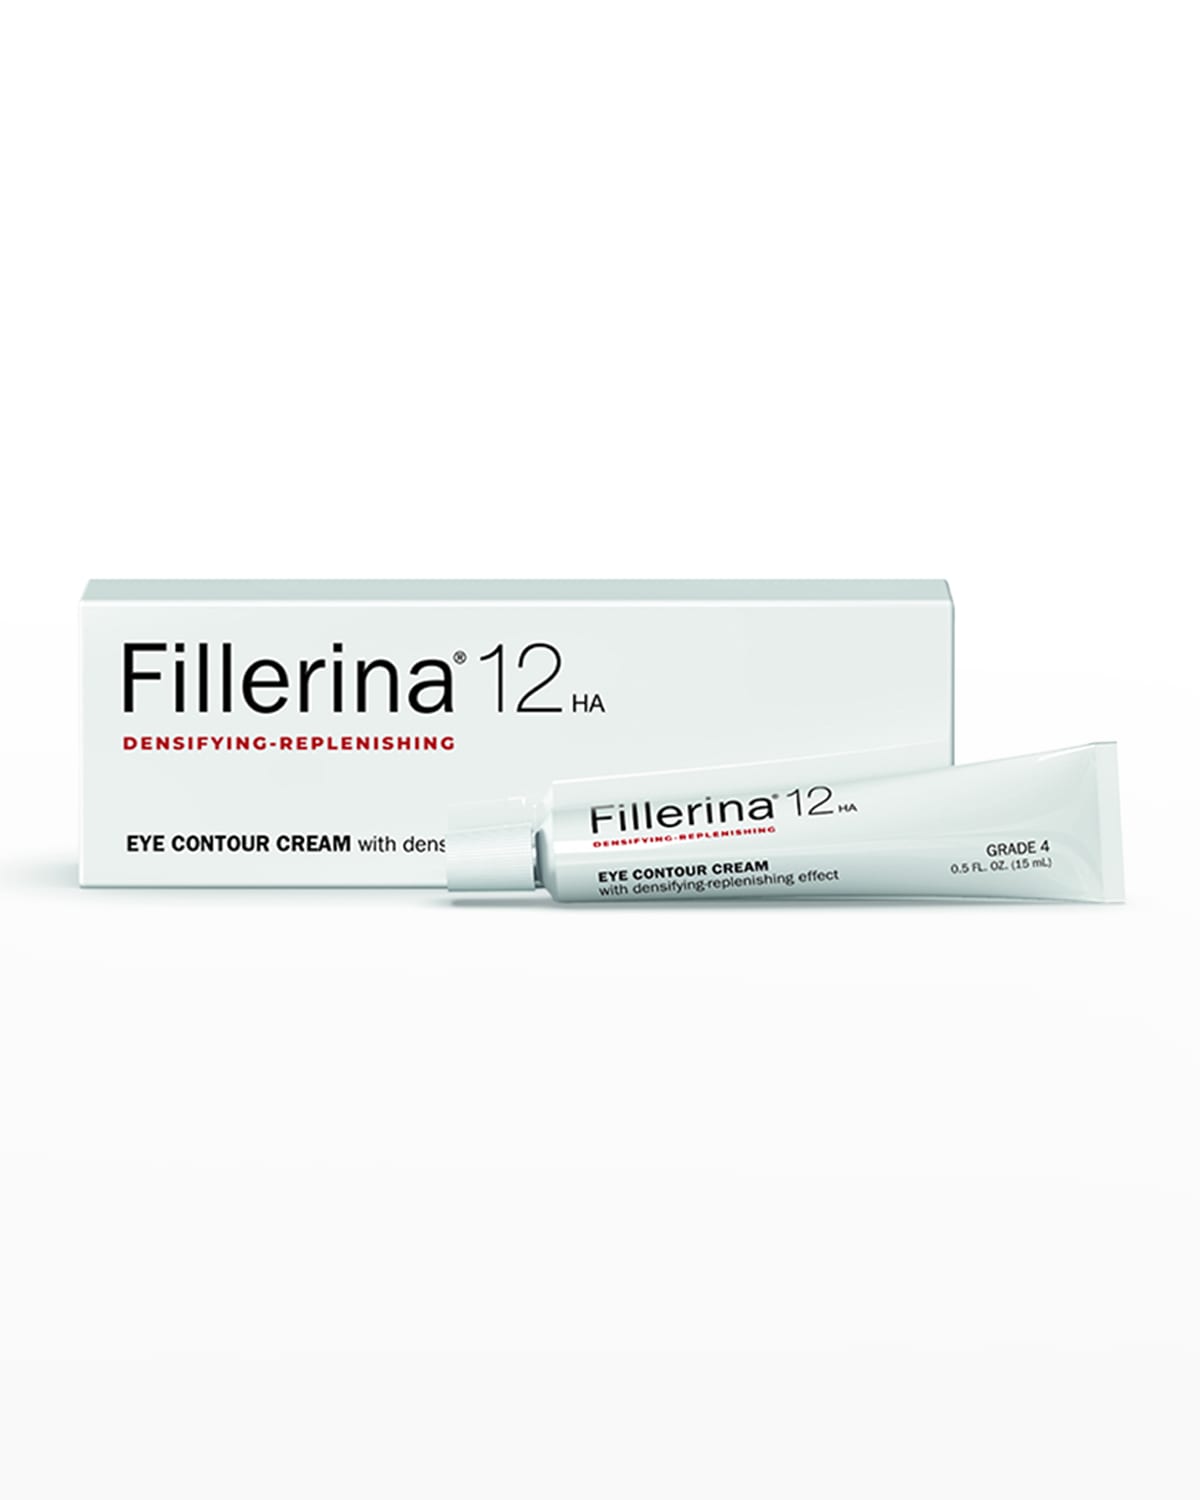 Fillerina 12HA Densifying Eye Contour Cream Grade 4, 0.5 oz.